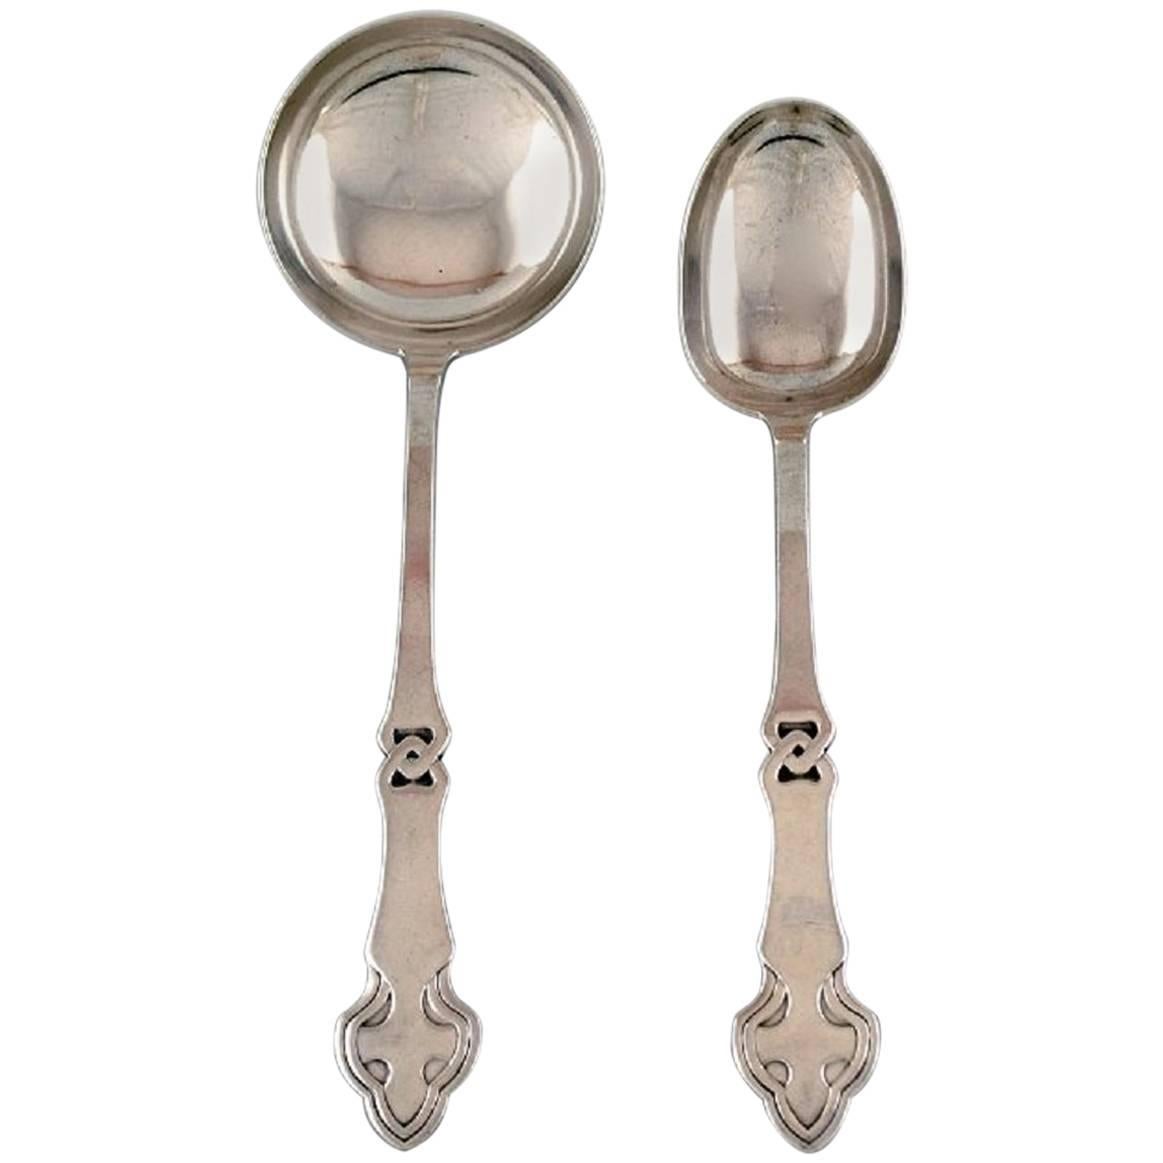 Danish Art Nouveau Two Serving Spoons, Silver, 1910s-1920s.